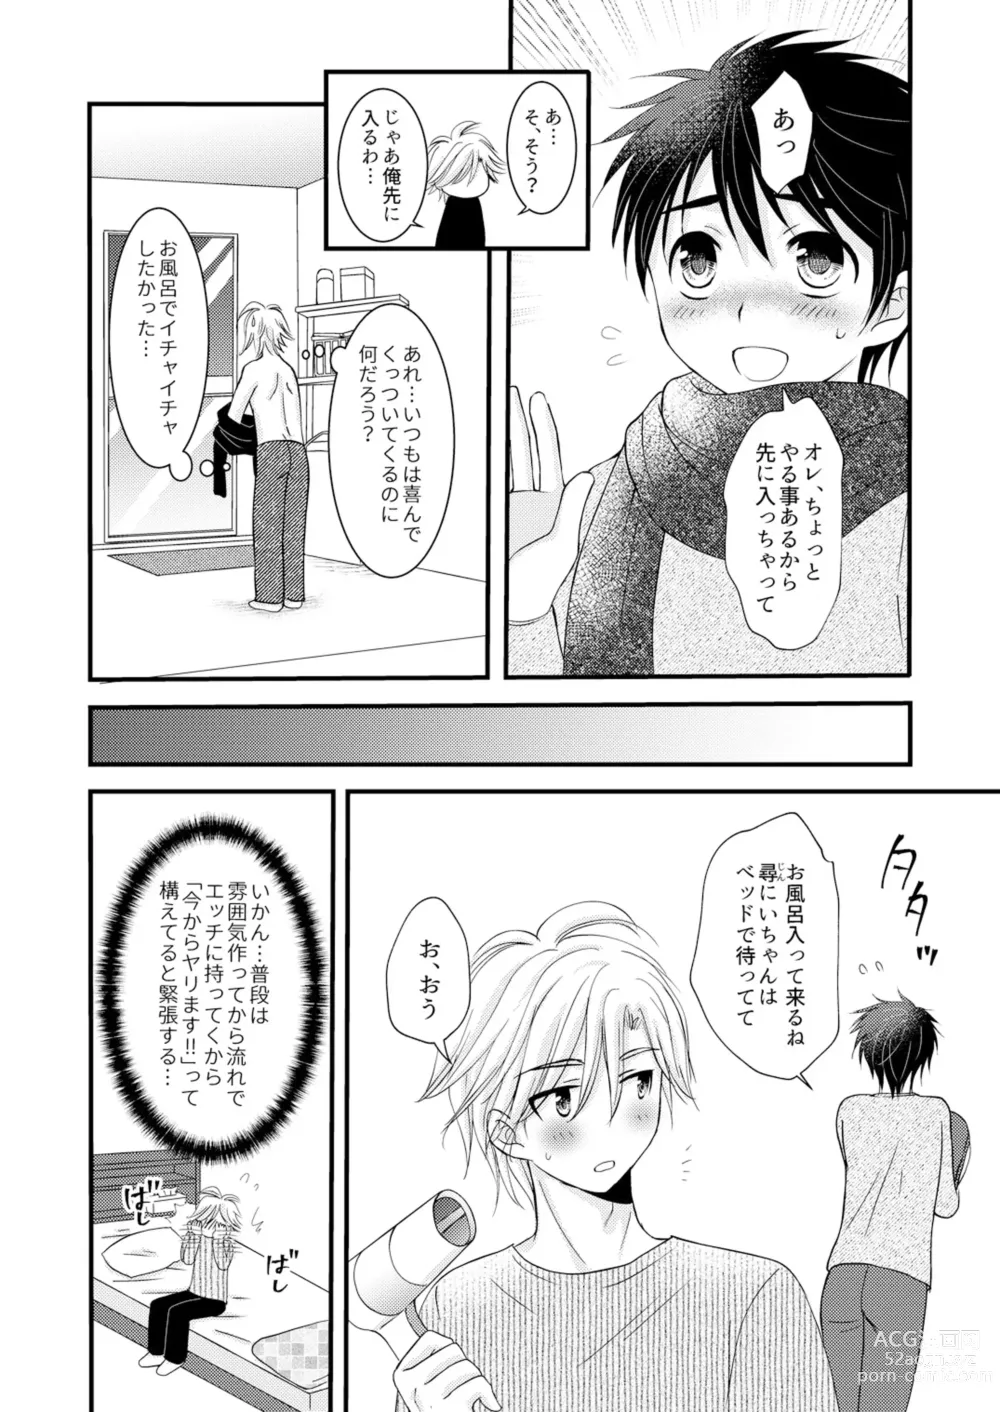 Page 35 of doujinshi Oitekita Umi Seiya Hen